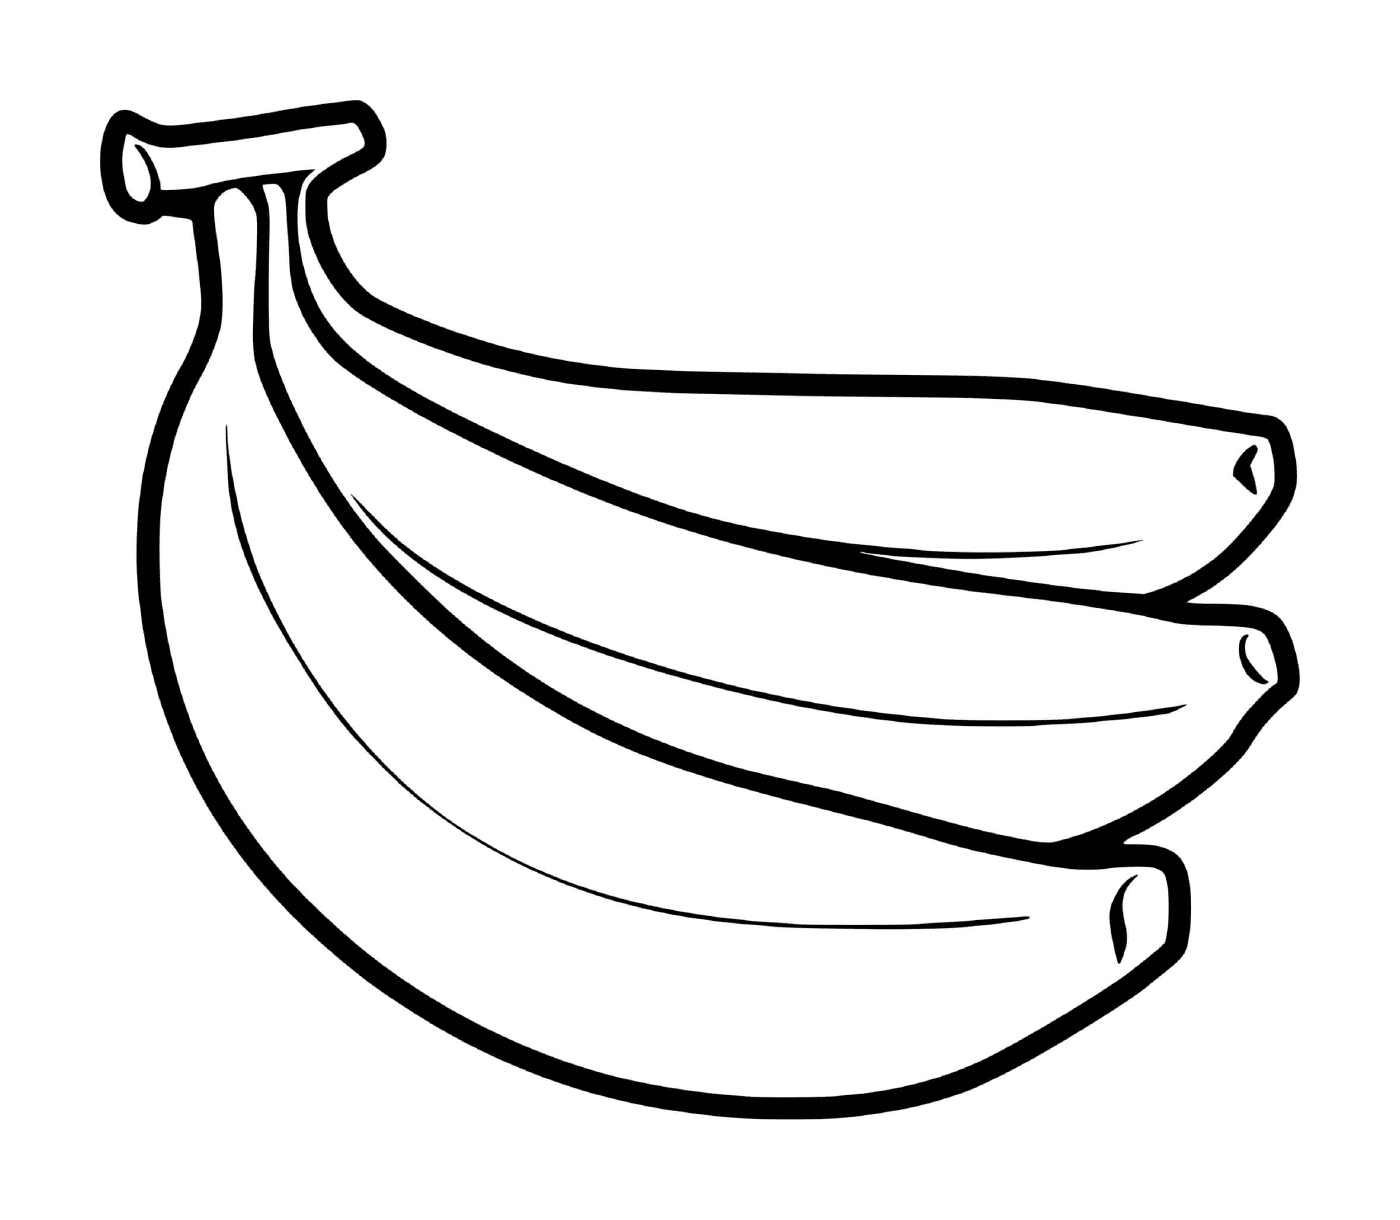  Un mucchio di banane piantate sul terreno 